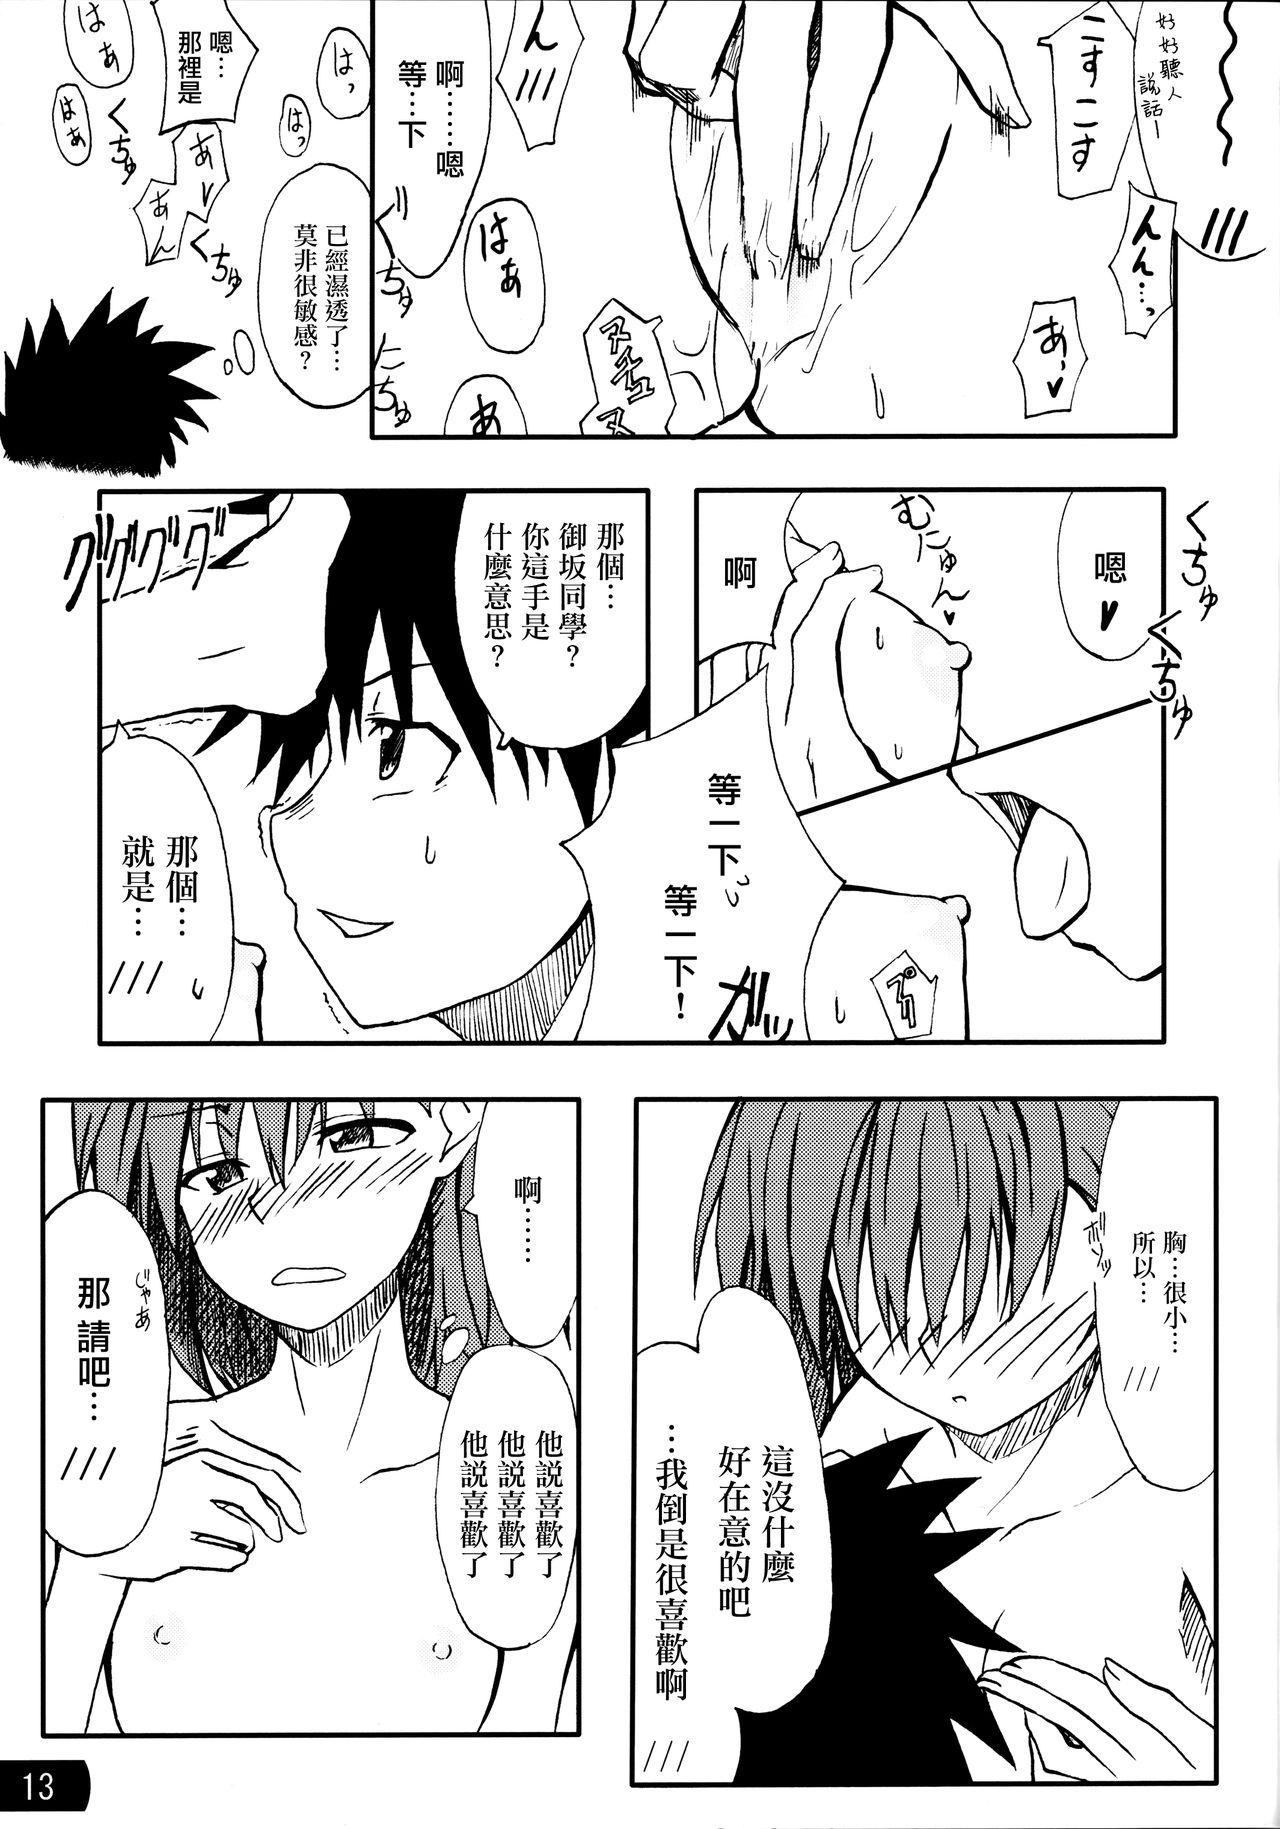 Family Toaru mousou no chou denji hon 02 - Toaru kagaku no railgun Amateur - Page 12